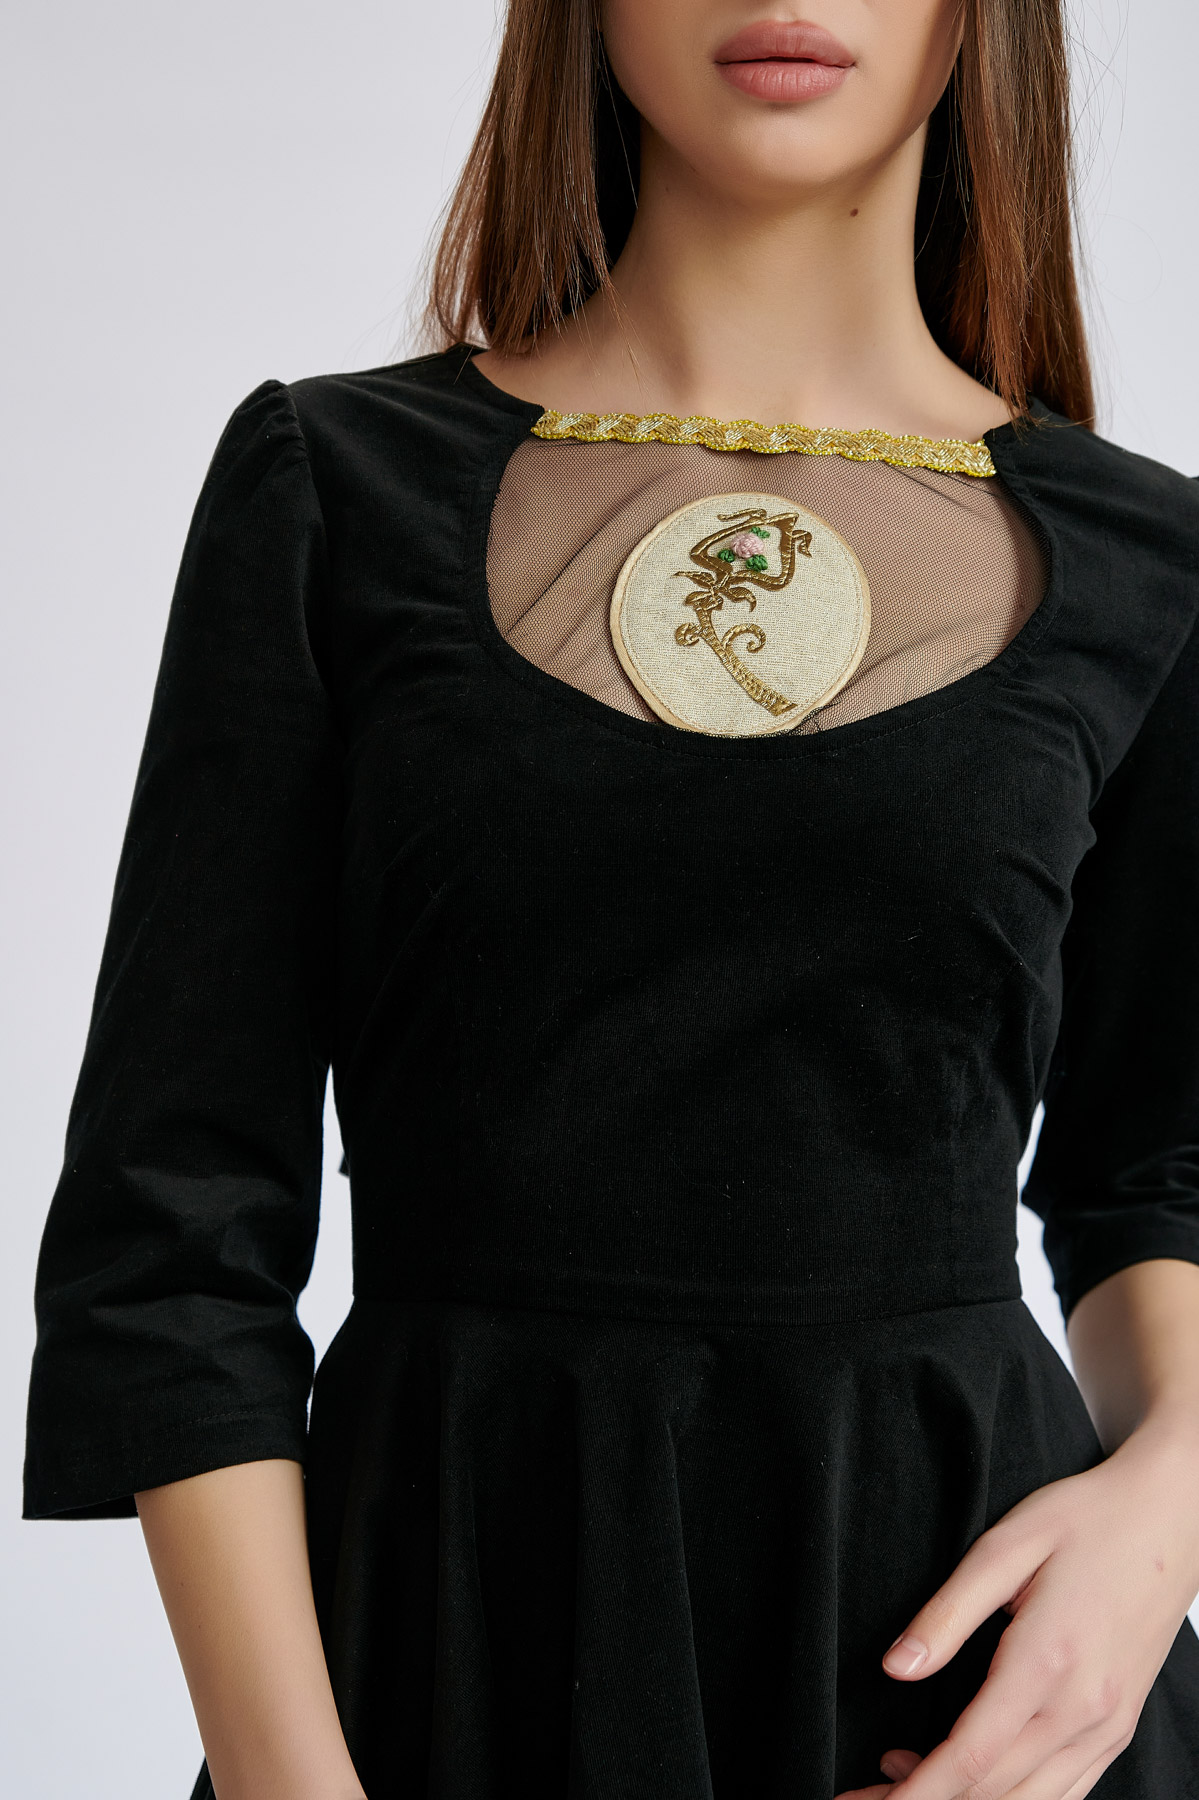 Dress GABRA 22. Natural fabrics, original design, handmade embroidery